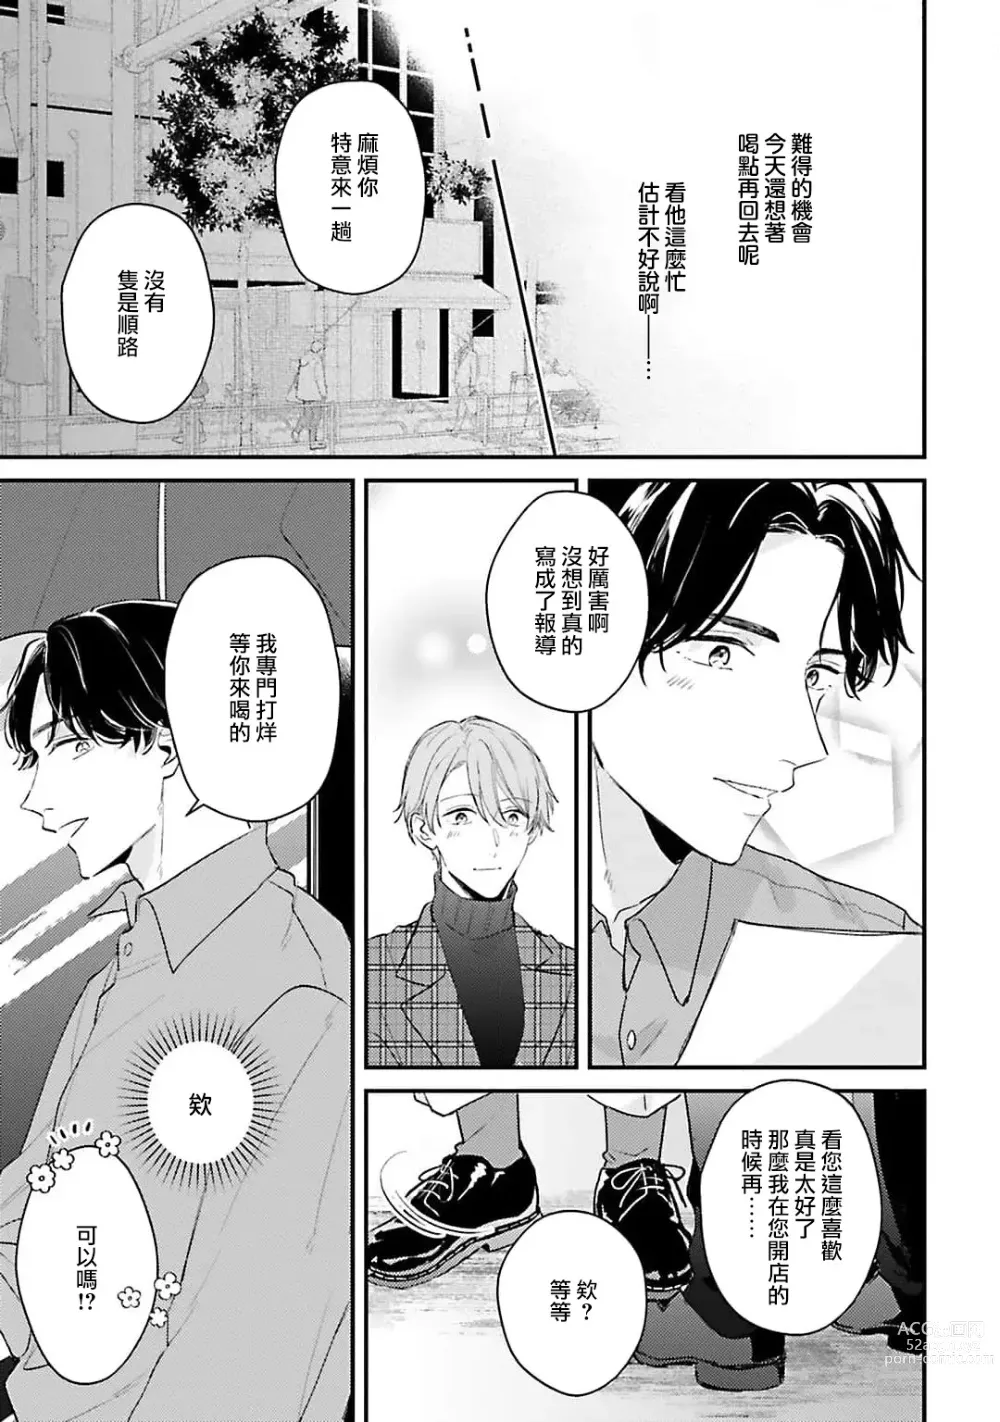 Page 18 of manga 绽放的恋爱皆为醉与甜1